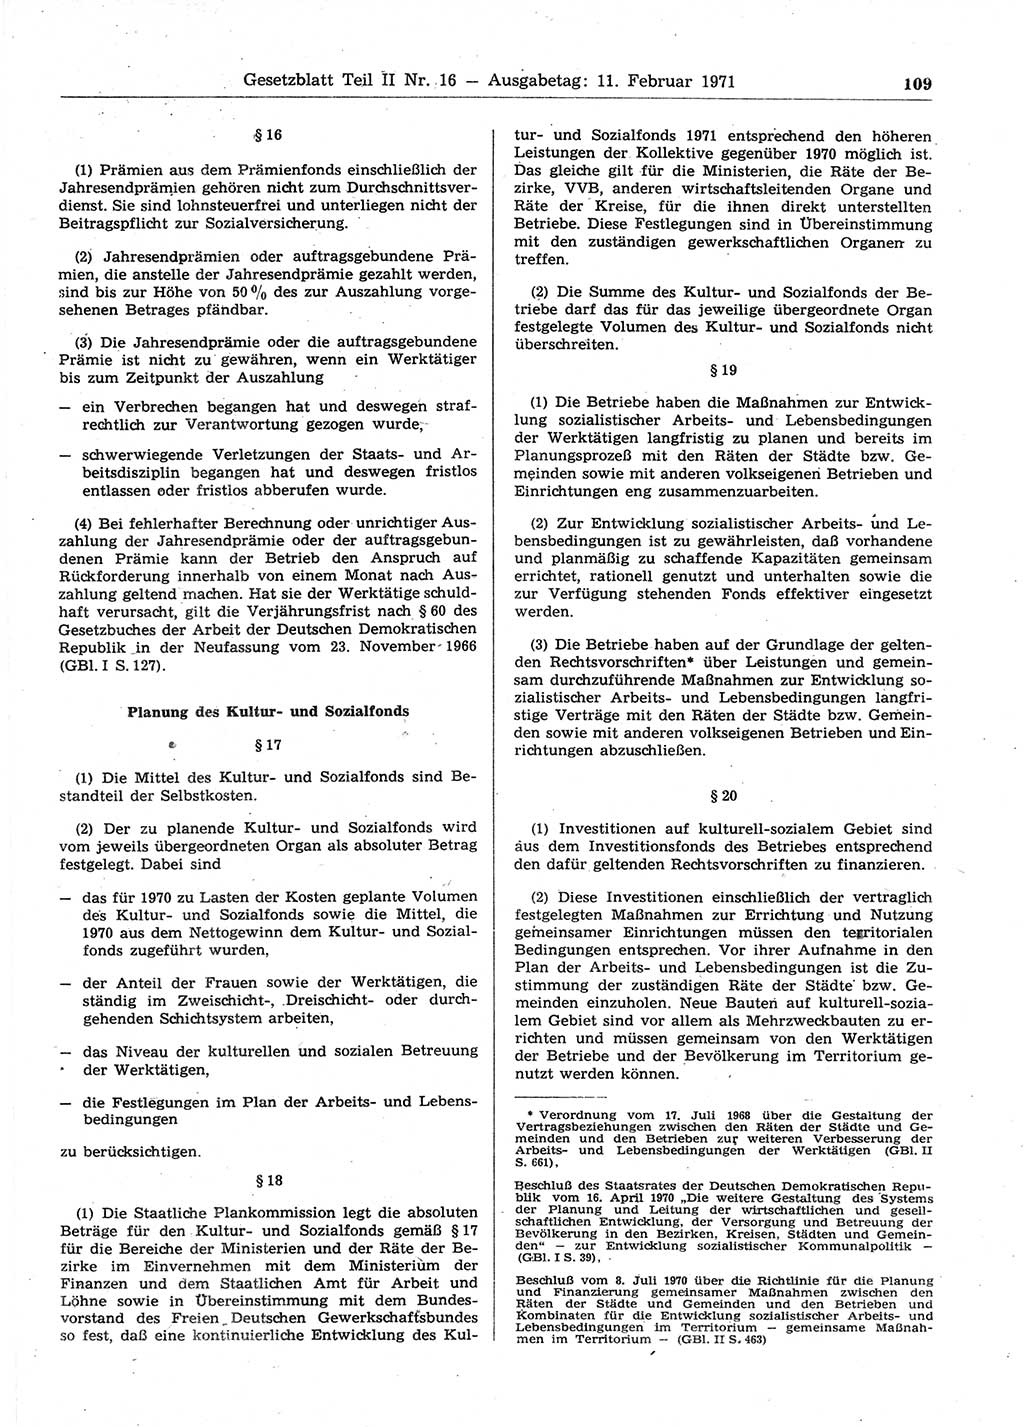 Gesetzblatt (GBl.) der Deutschen Demokratischen Republik (DDR) Teil ⅠⅠ 1971, Seite 109 (GBl. DDR ⅠⅠ 1971, S. 109)